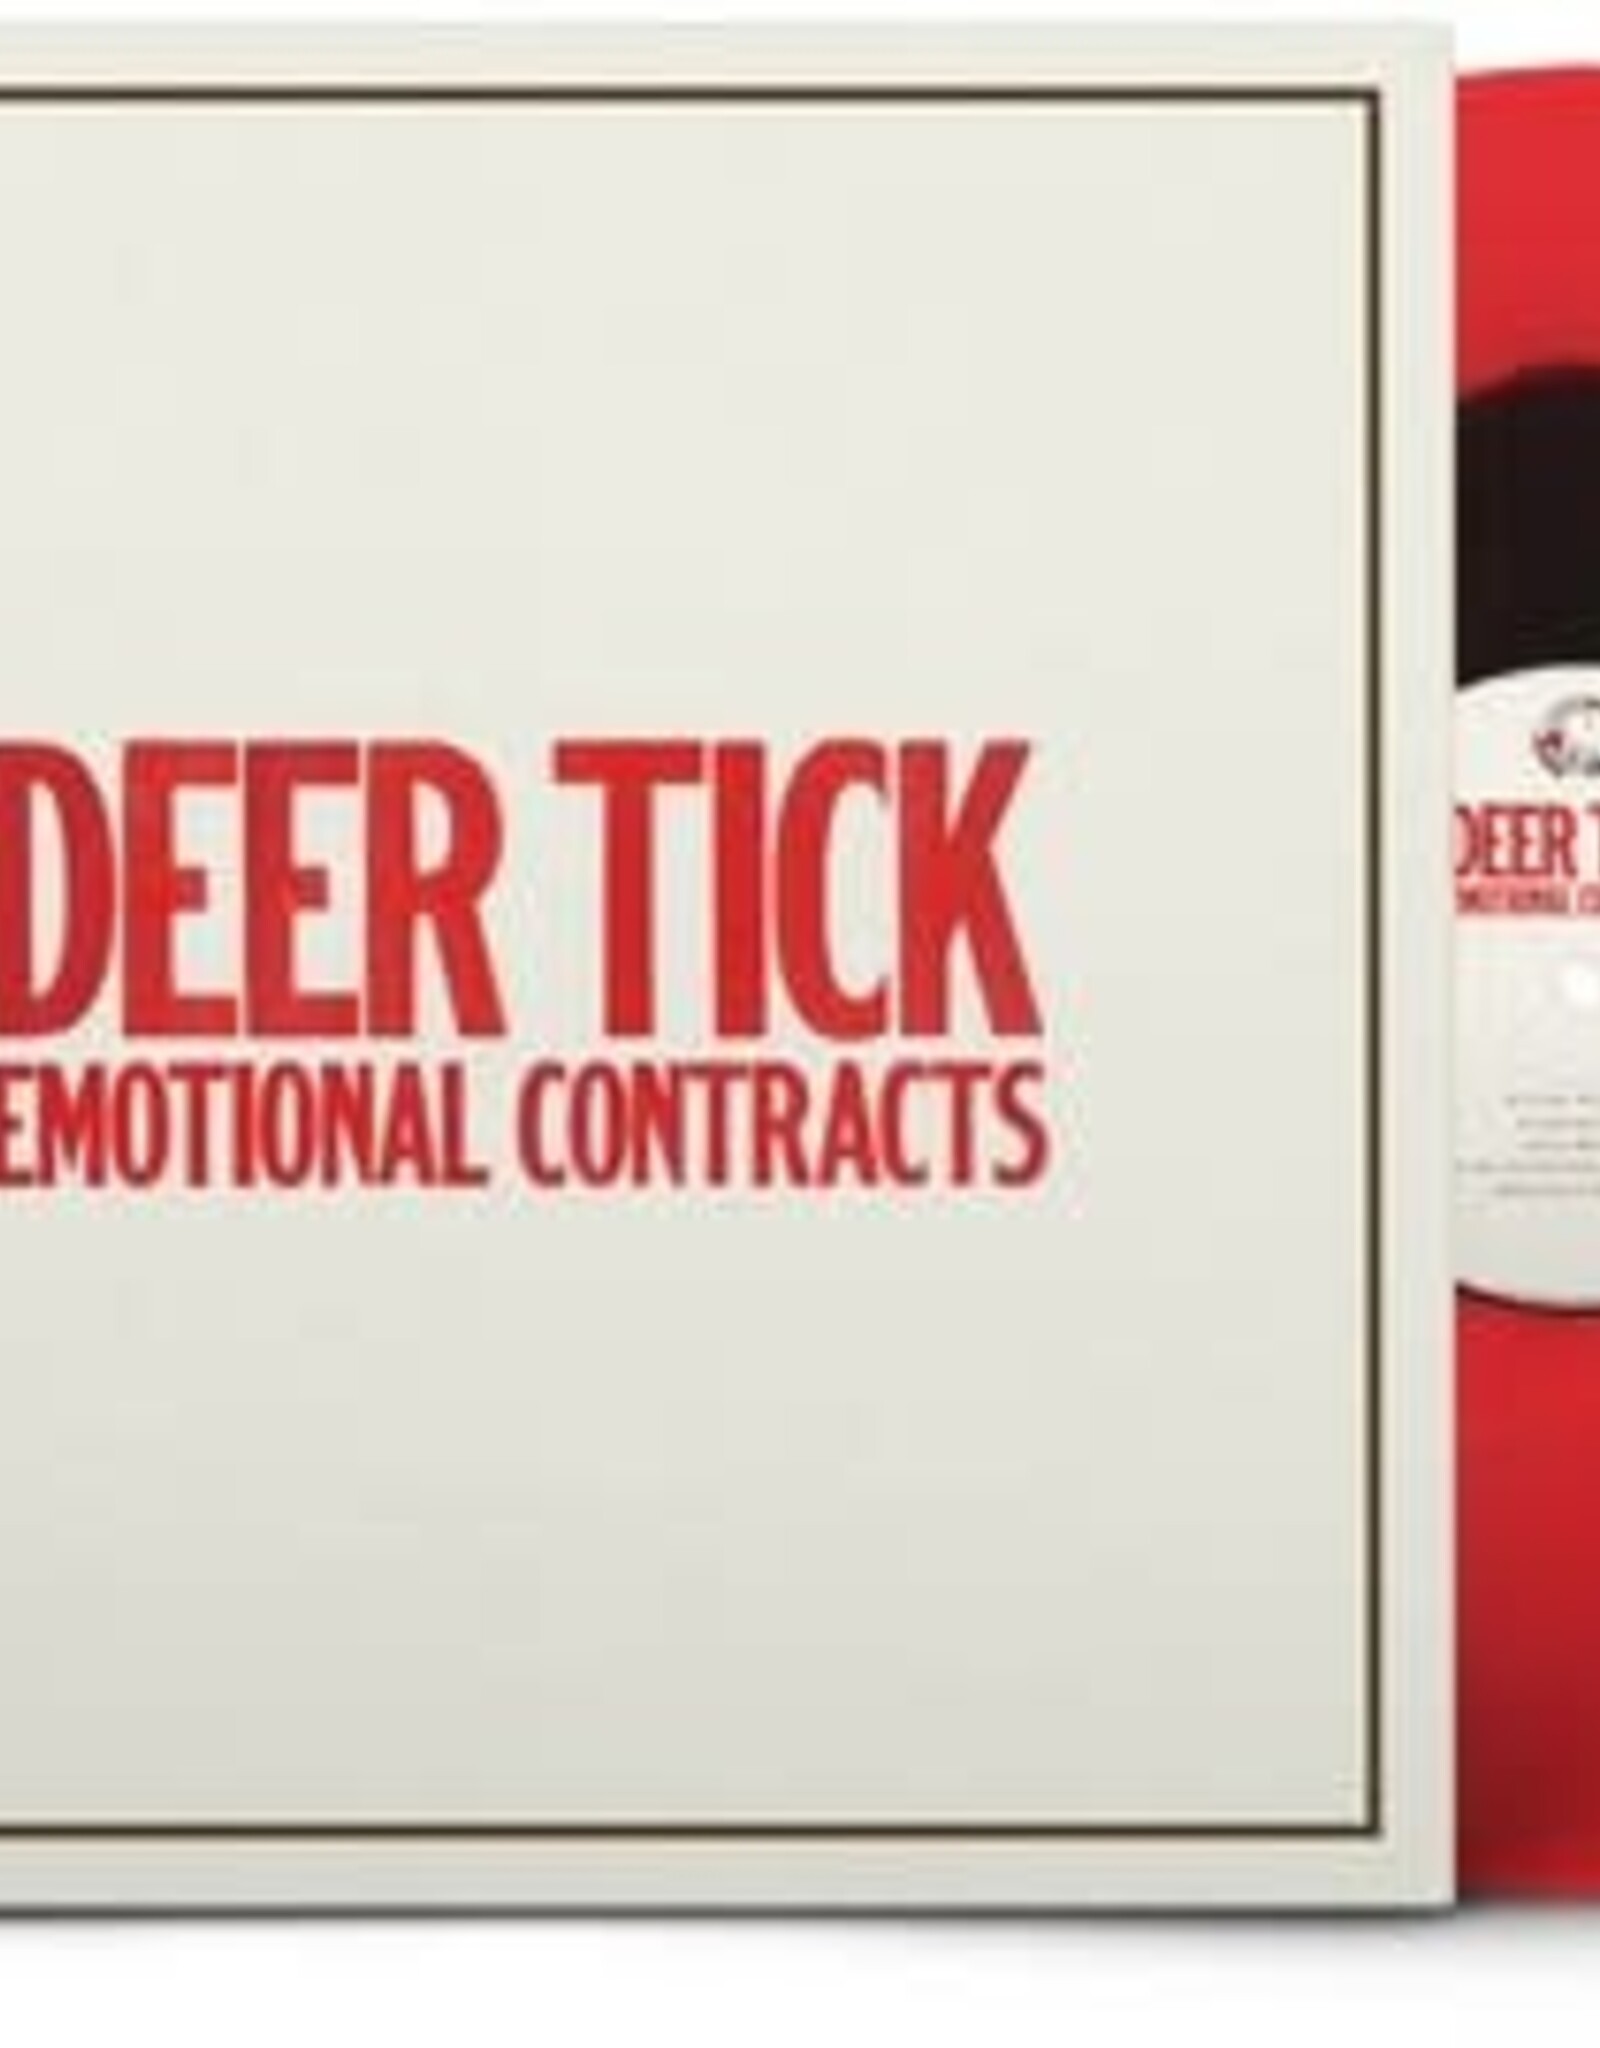 Deer Tick - Emotional Contracts (Color Vinyl)